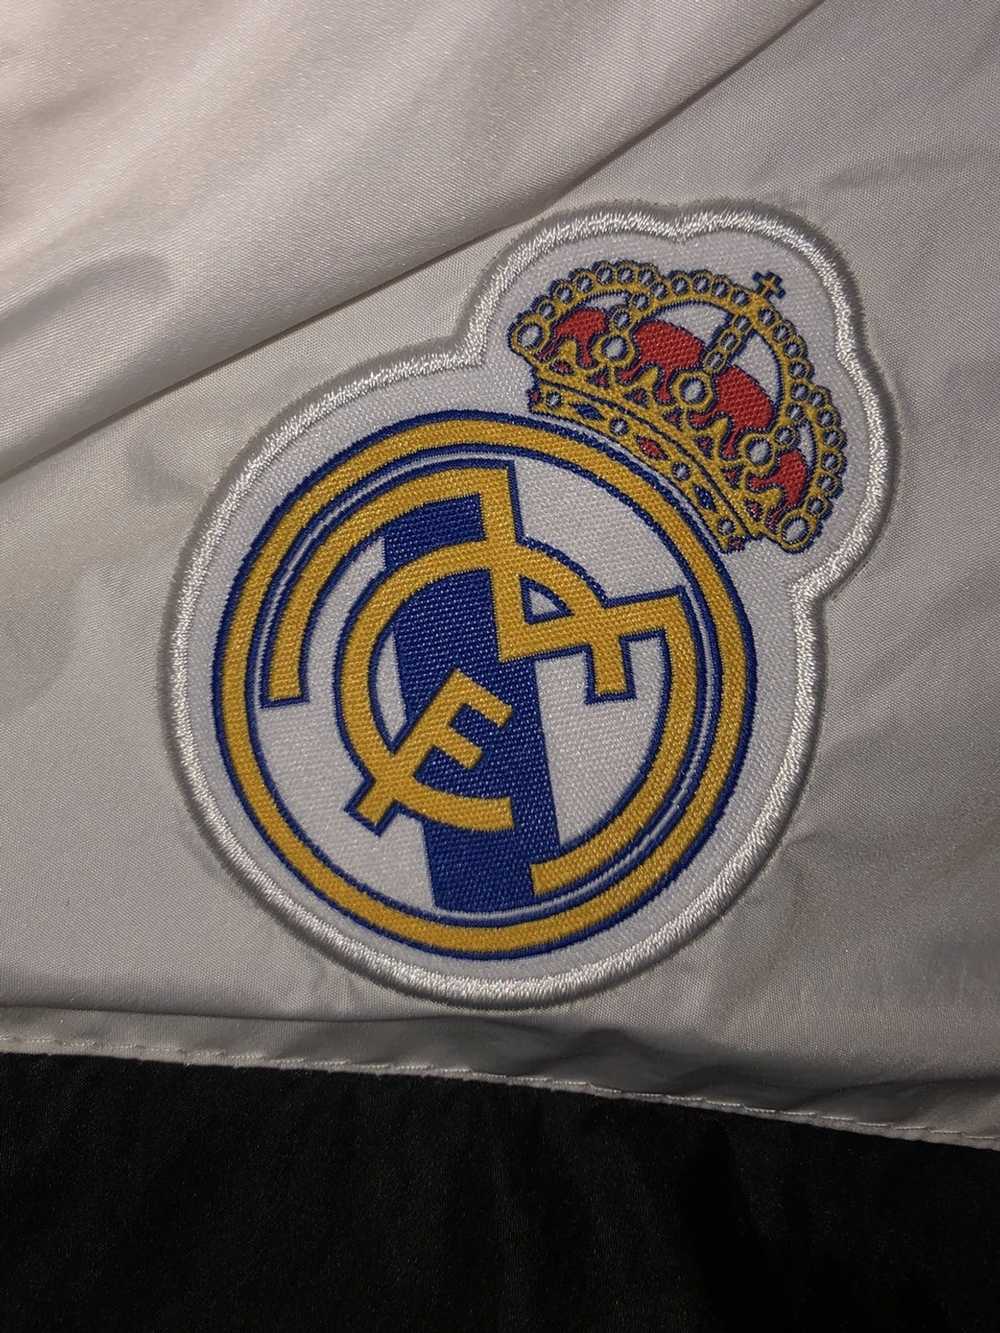 Real Madrid Real Madrid windbreaker - image 4